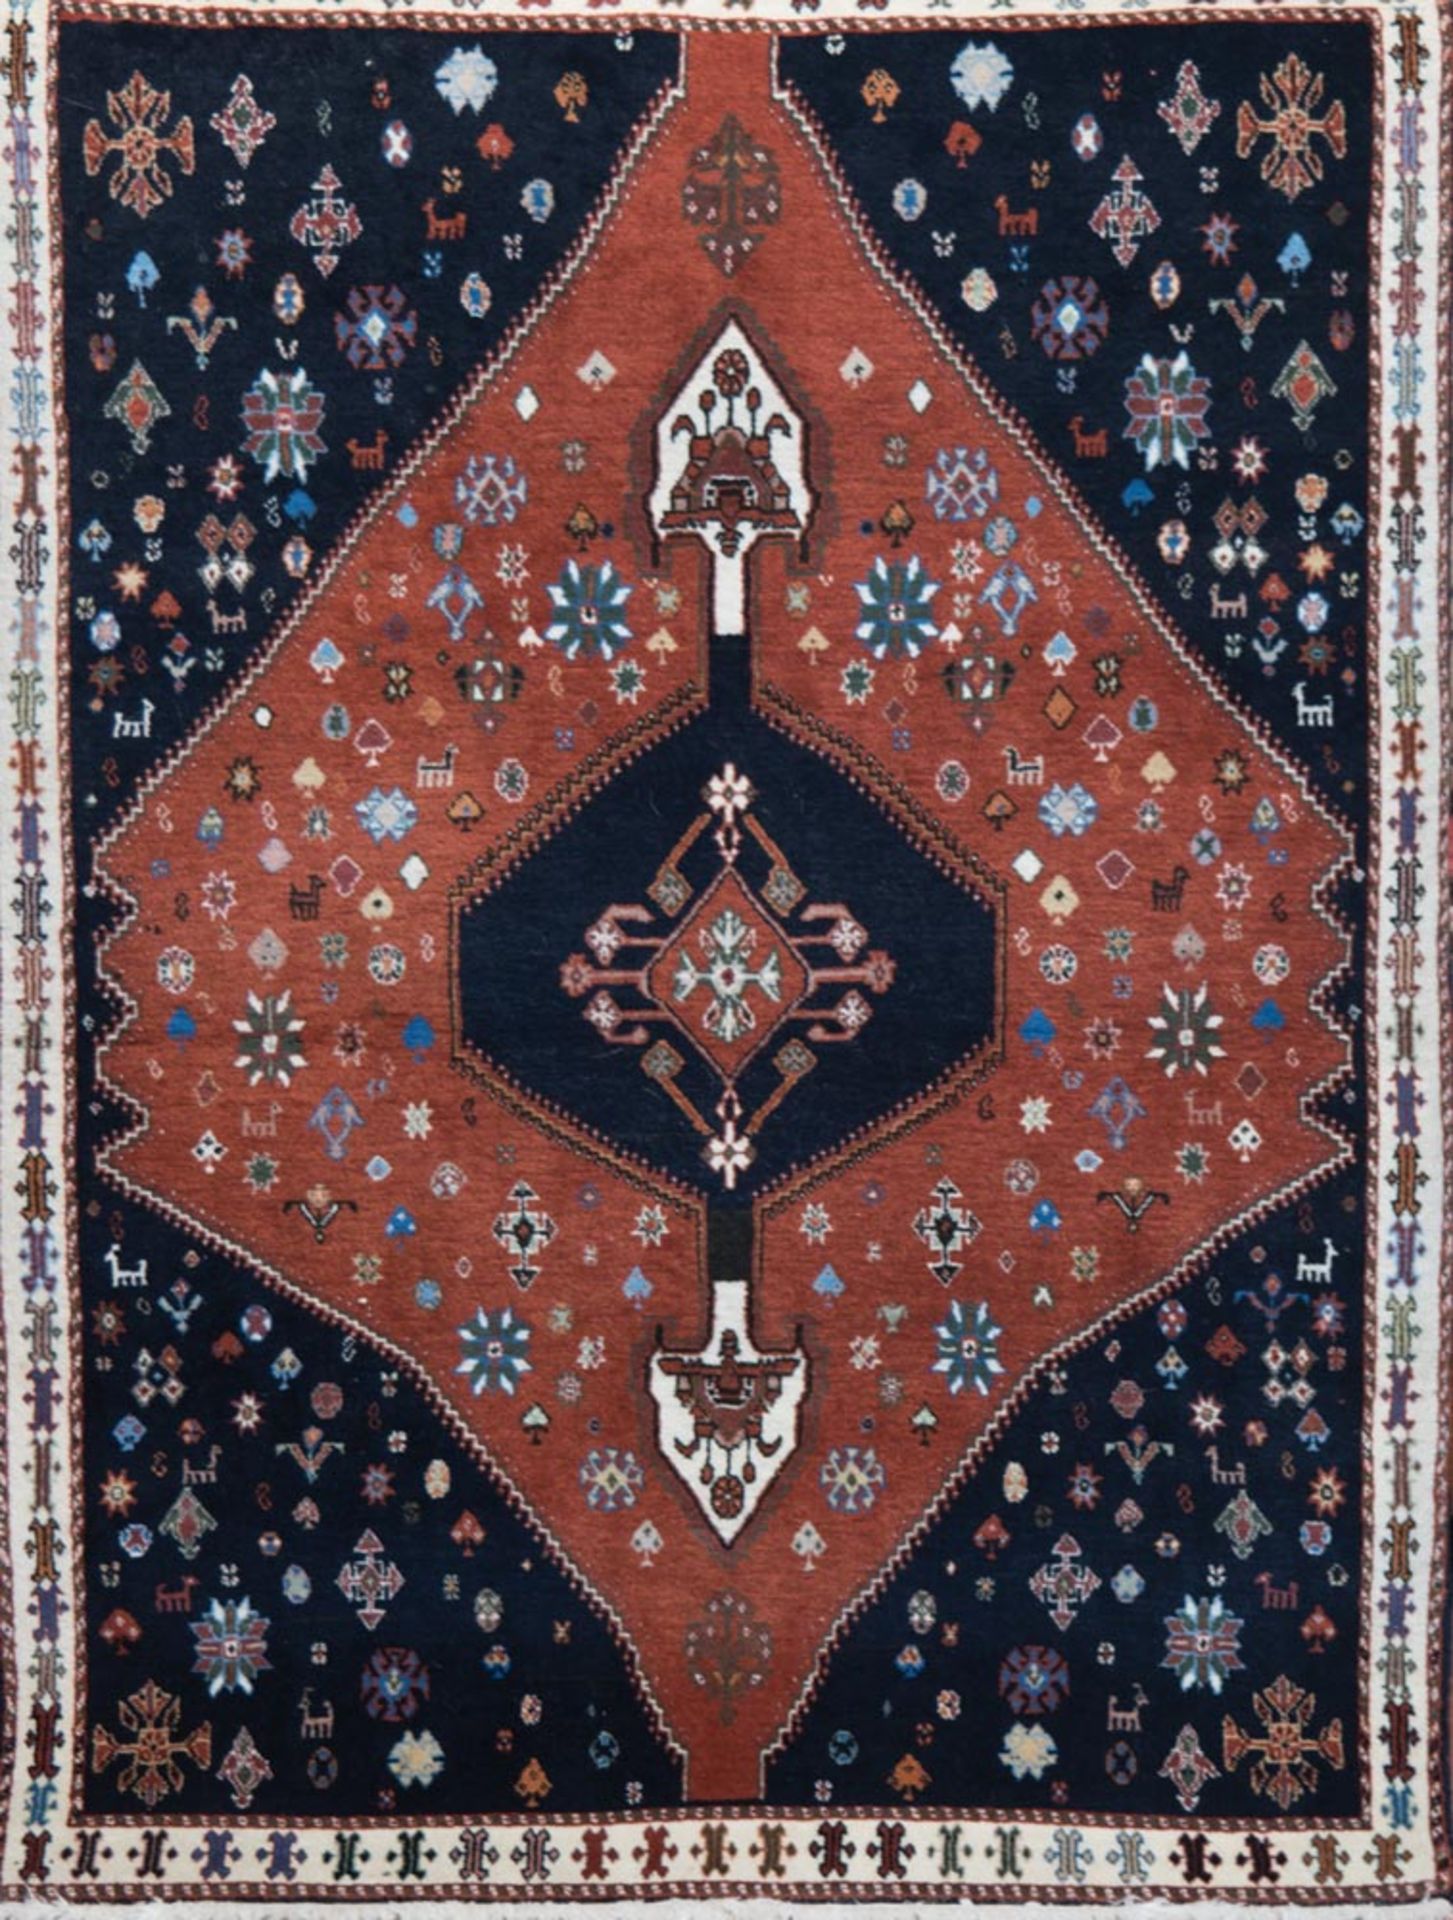 Afschari, Persien, Wolle auf Wolle, rotgrundig mit zentralem Muster, 1 Fleck, guter Zustand, 150x10